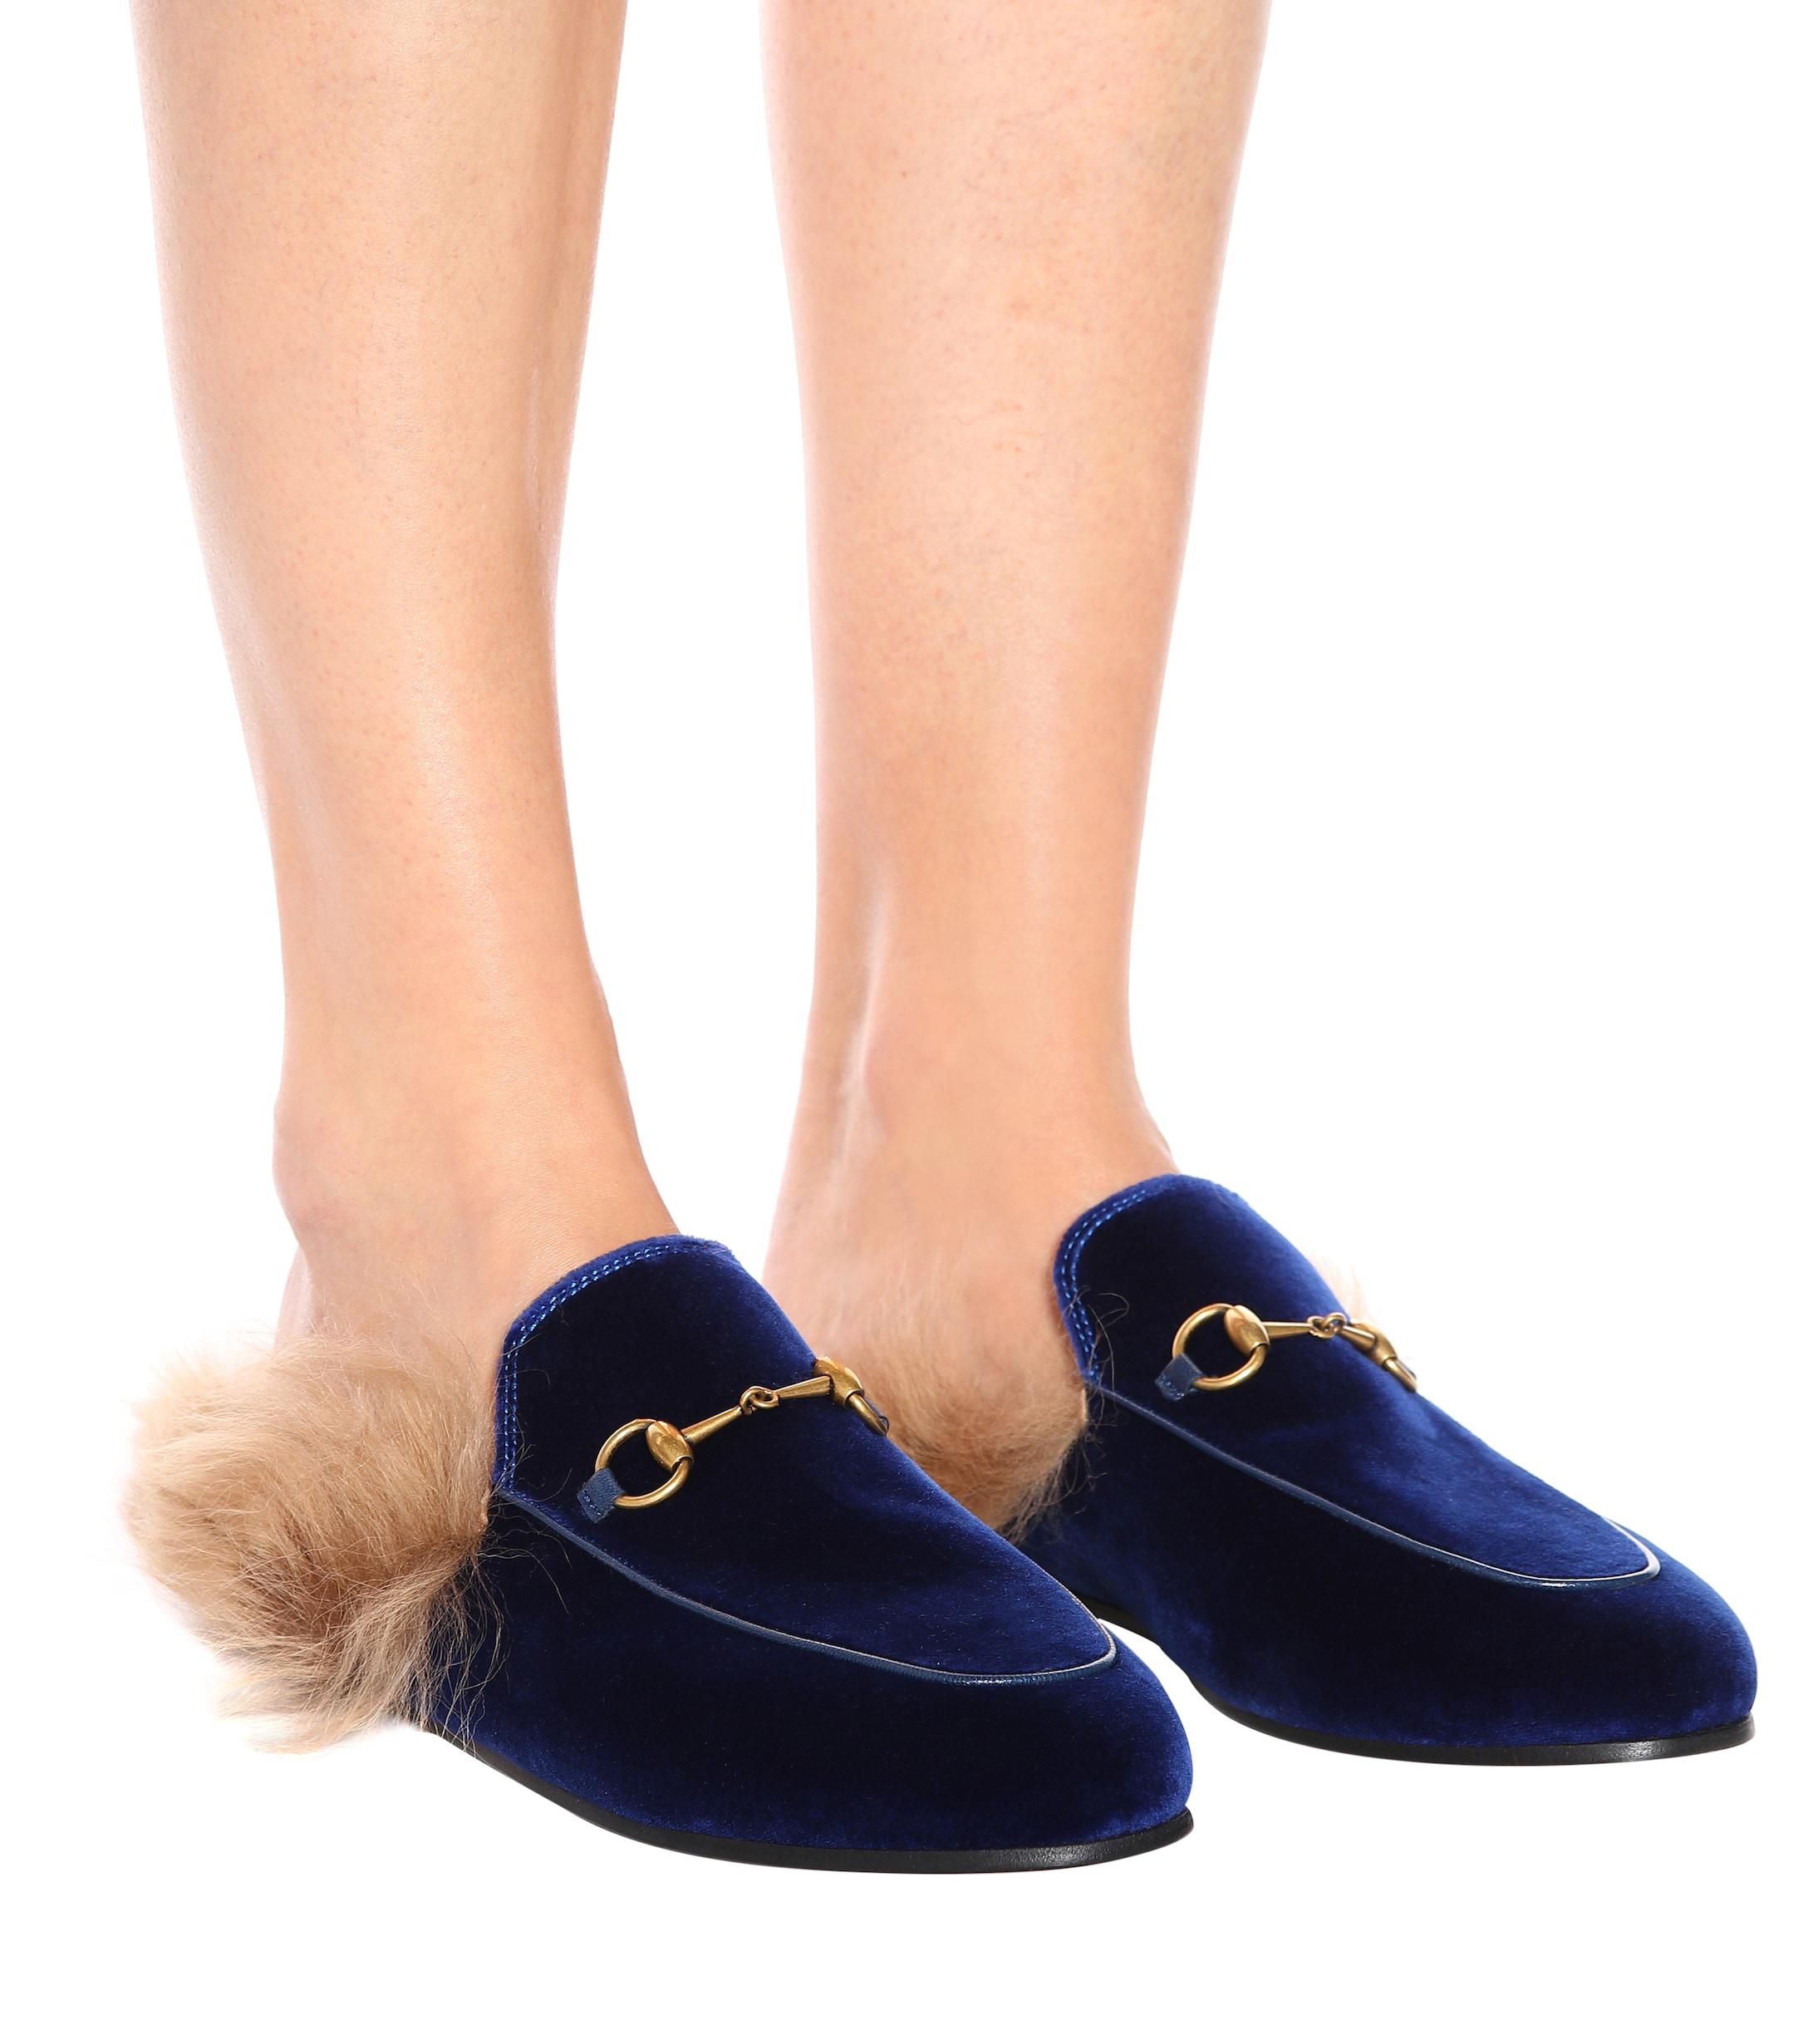 velvet gucci slippers